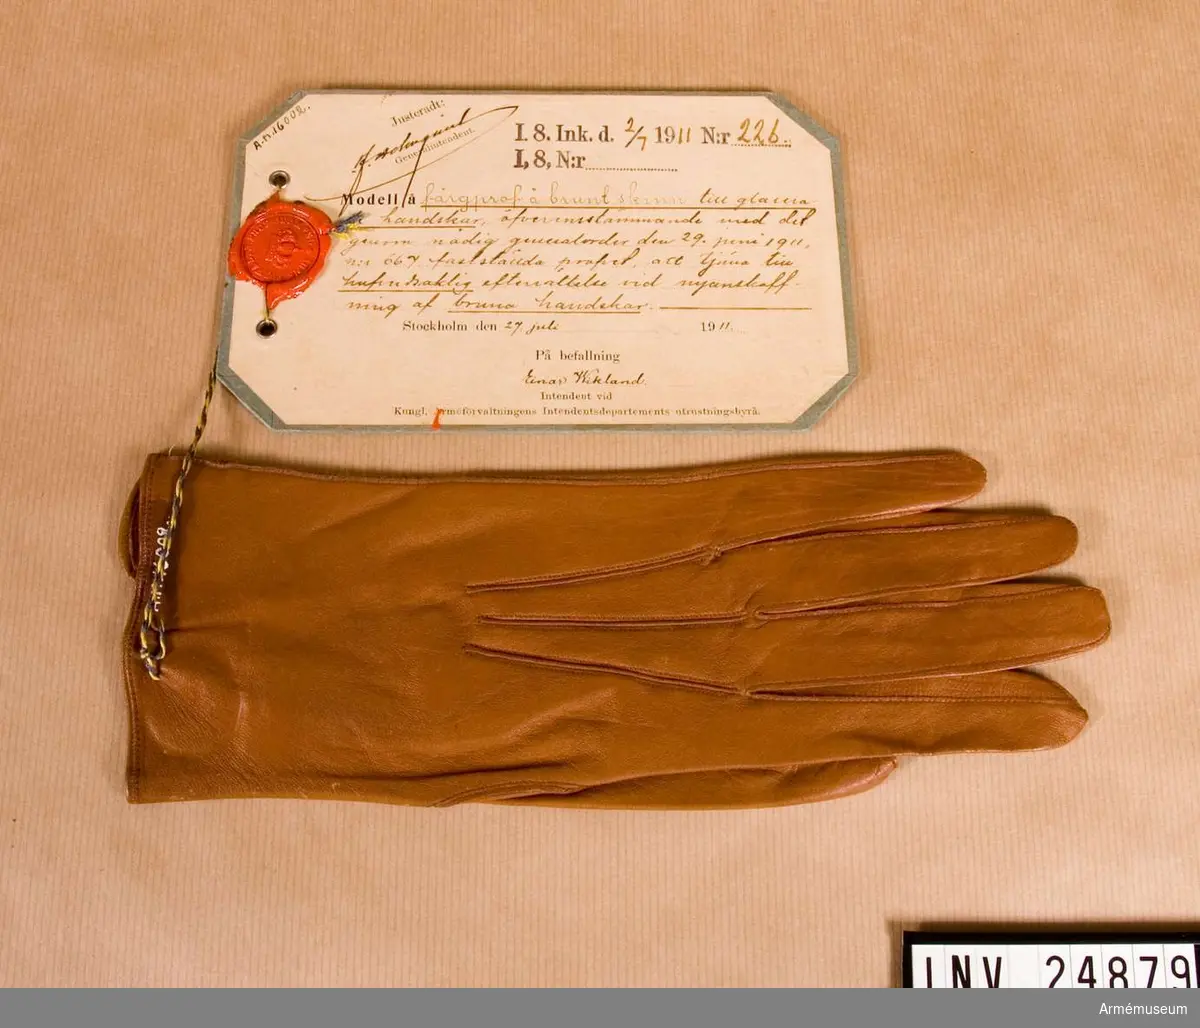 Grupp C I.
Färgprov m/1911, I 8, Upplands infanterireg.
Vänsterhandske till glacerade handskar att tjäna till huvudsaklig efterrättelse vid anskaffning av bruna handskar.